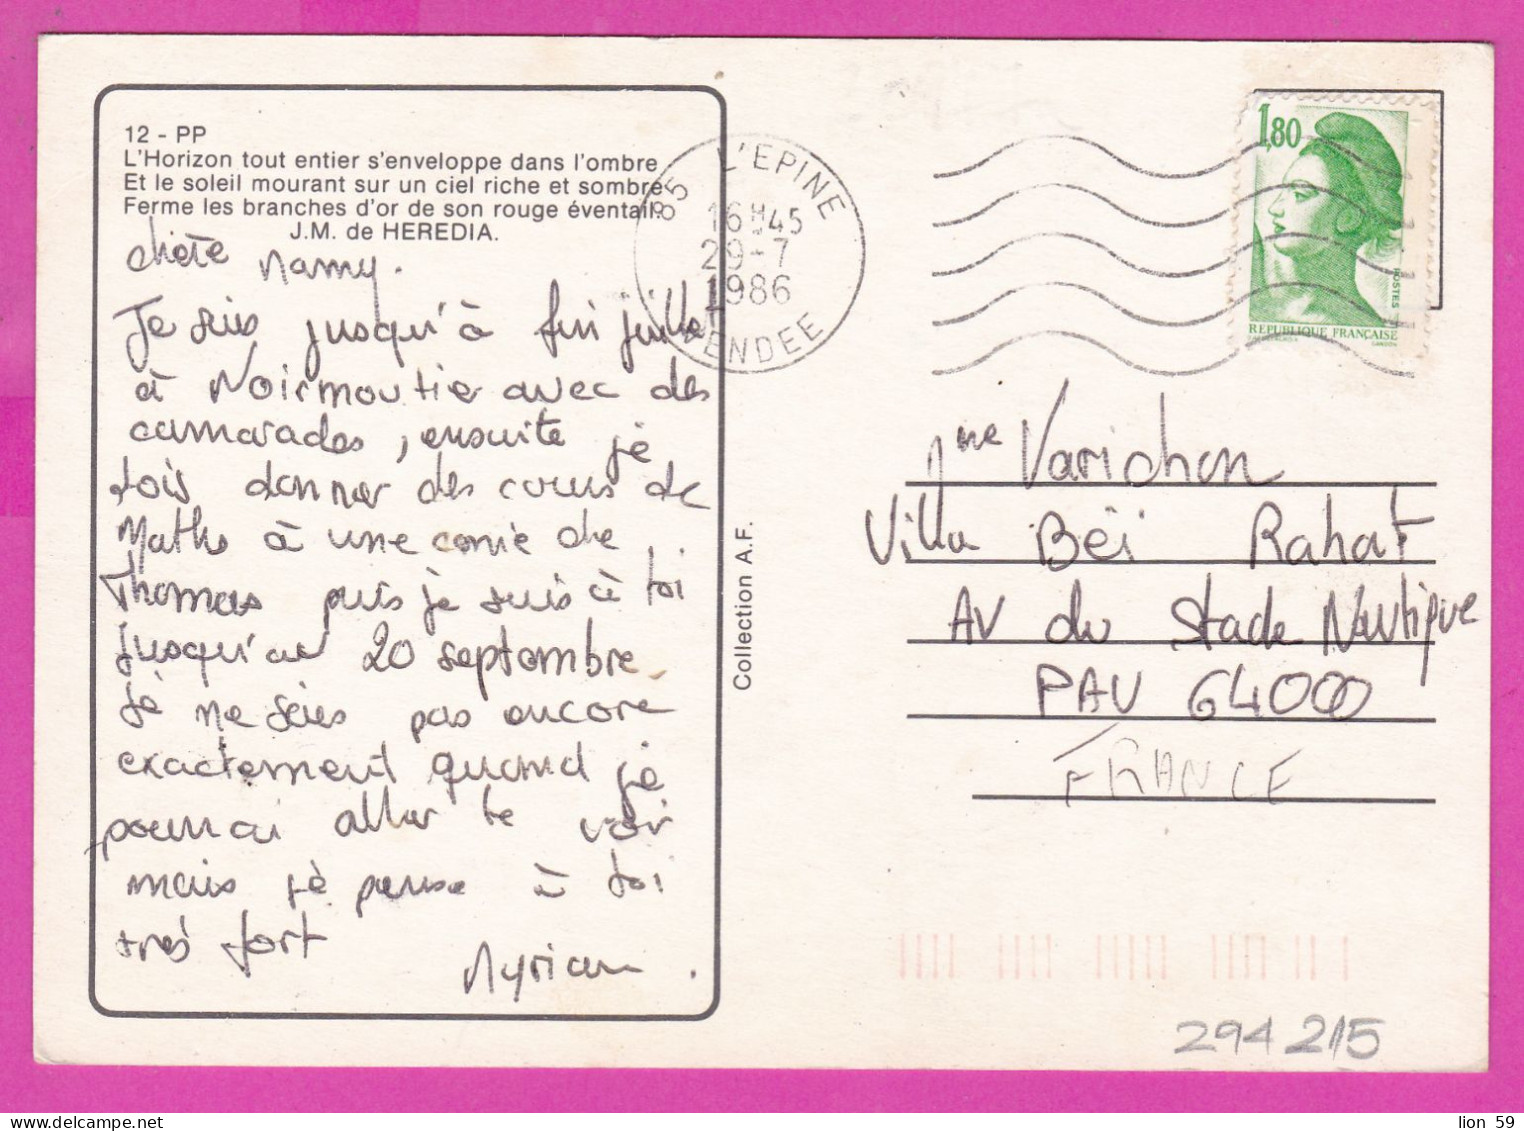 294215 / France - L'Horizon Tout Entier S'enveloppe Dans L'ombre Poem PC 1986 L'Epine USED 1.80 Fr. Liberty Of Gandon , - 1982-1990 Liberty Of Gandon